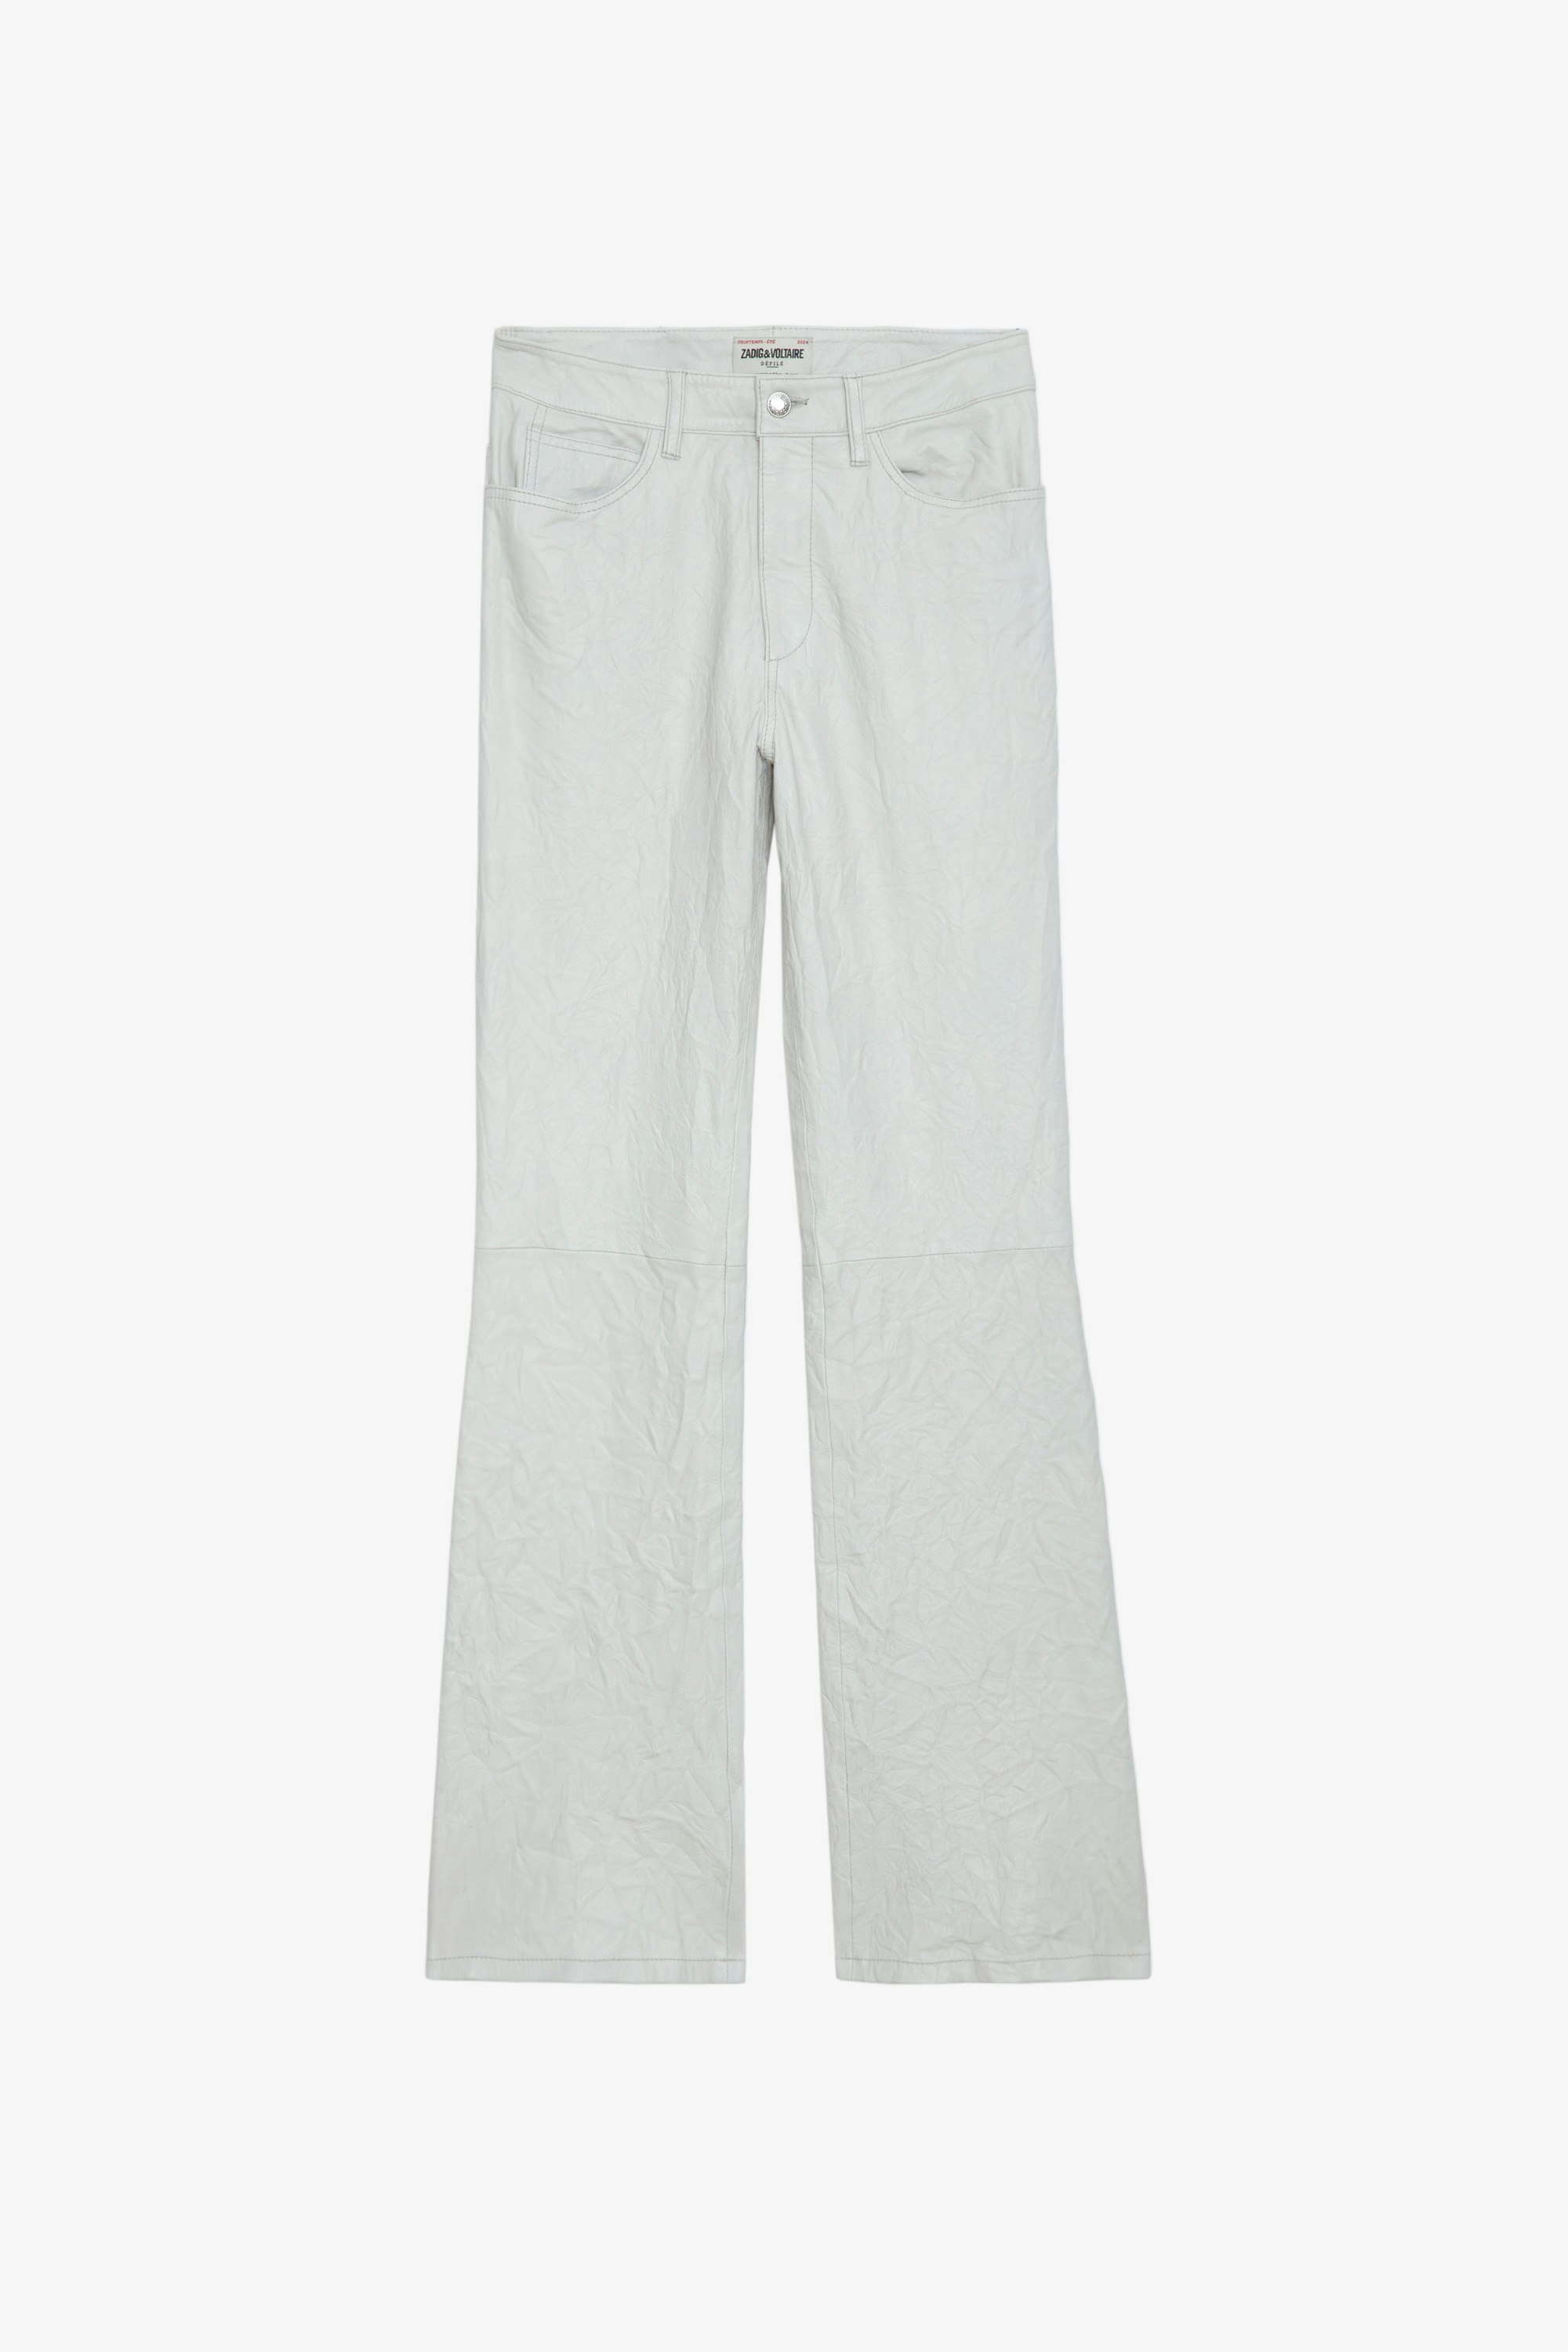 Pantalón de Piel Arrugada Pistol - Pantalón de traje acampanado de piel con efecto arrugado en color blanco con bolsillos.